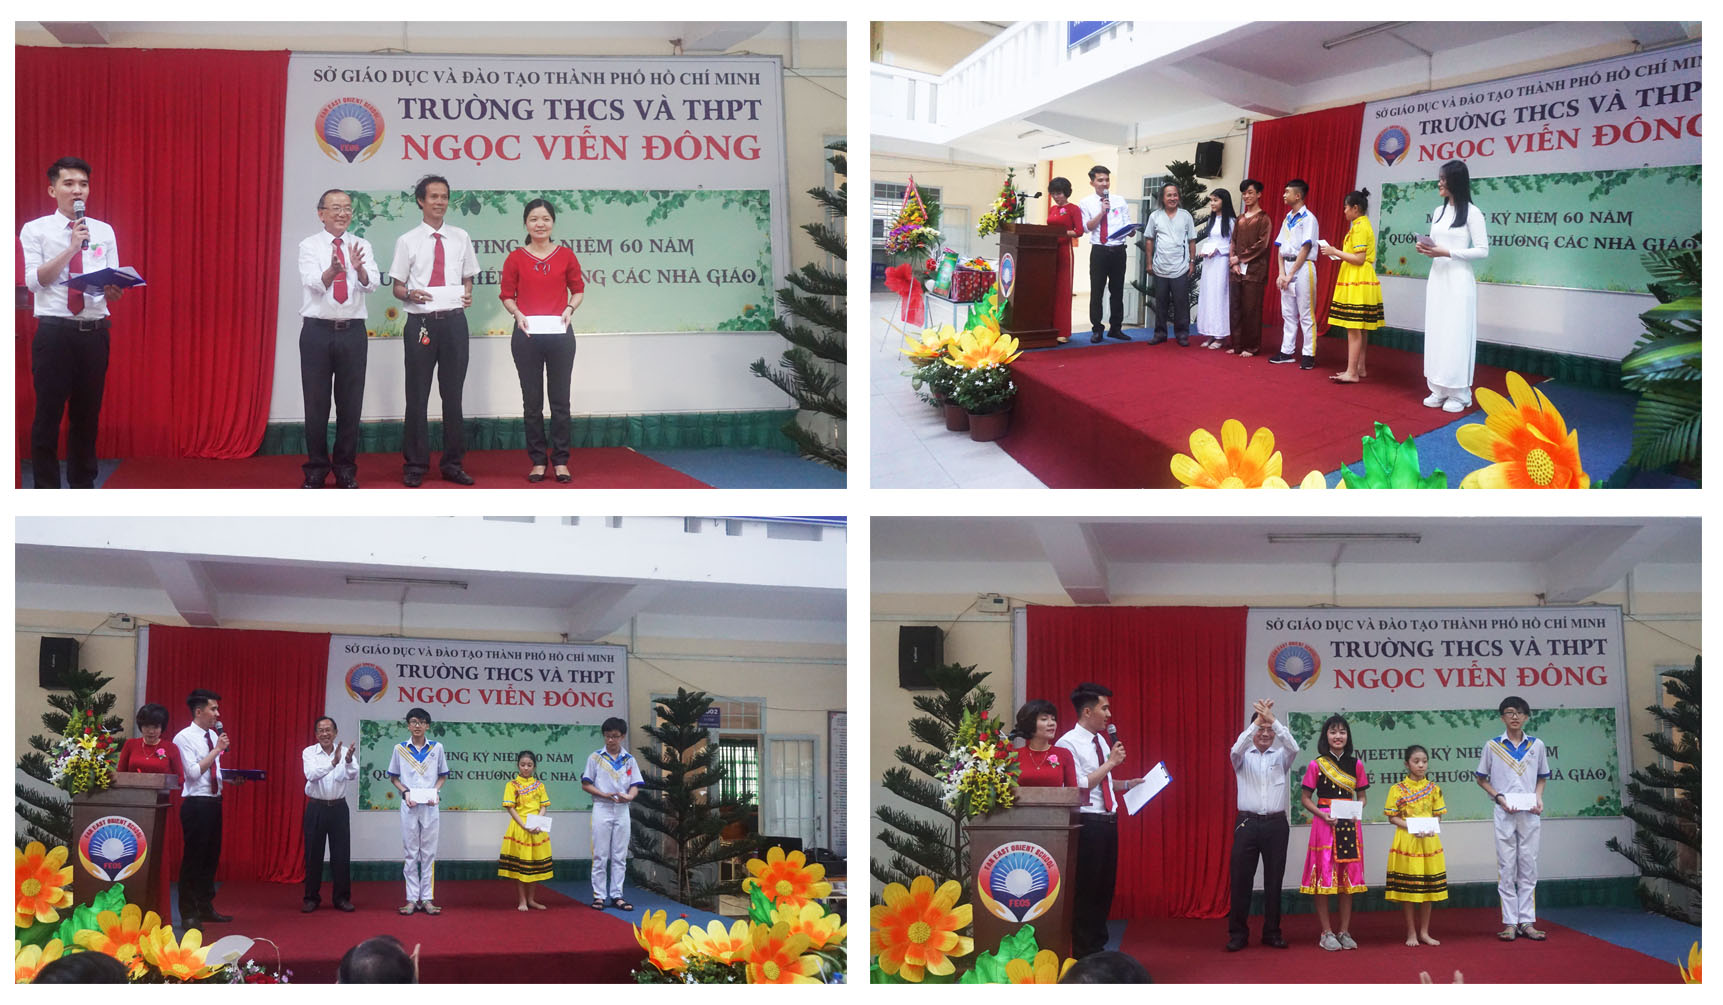 Hình ảnh trao giải thưởng trong đợt phát động phong trào chào mừng ngày Nhà giáo Việt Nam 20/11 của Trường THCS và THPT Ngọc Viễn Đông